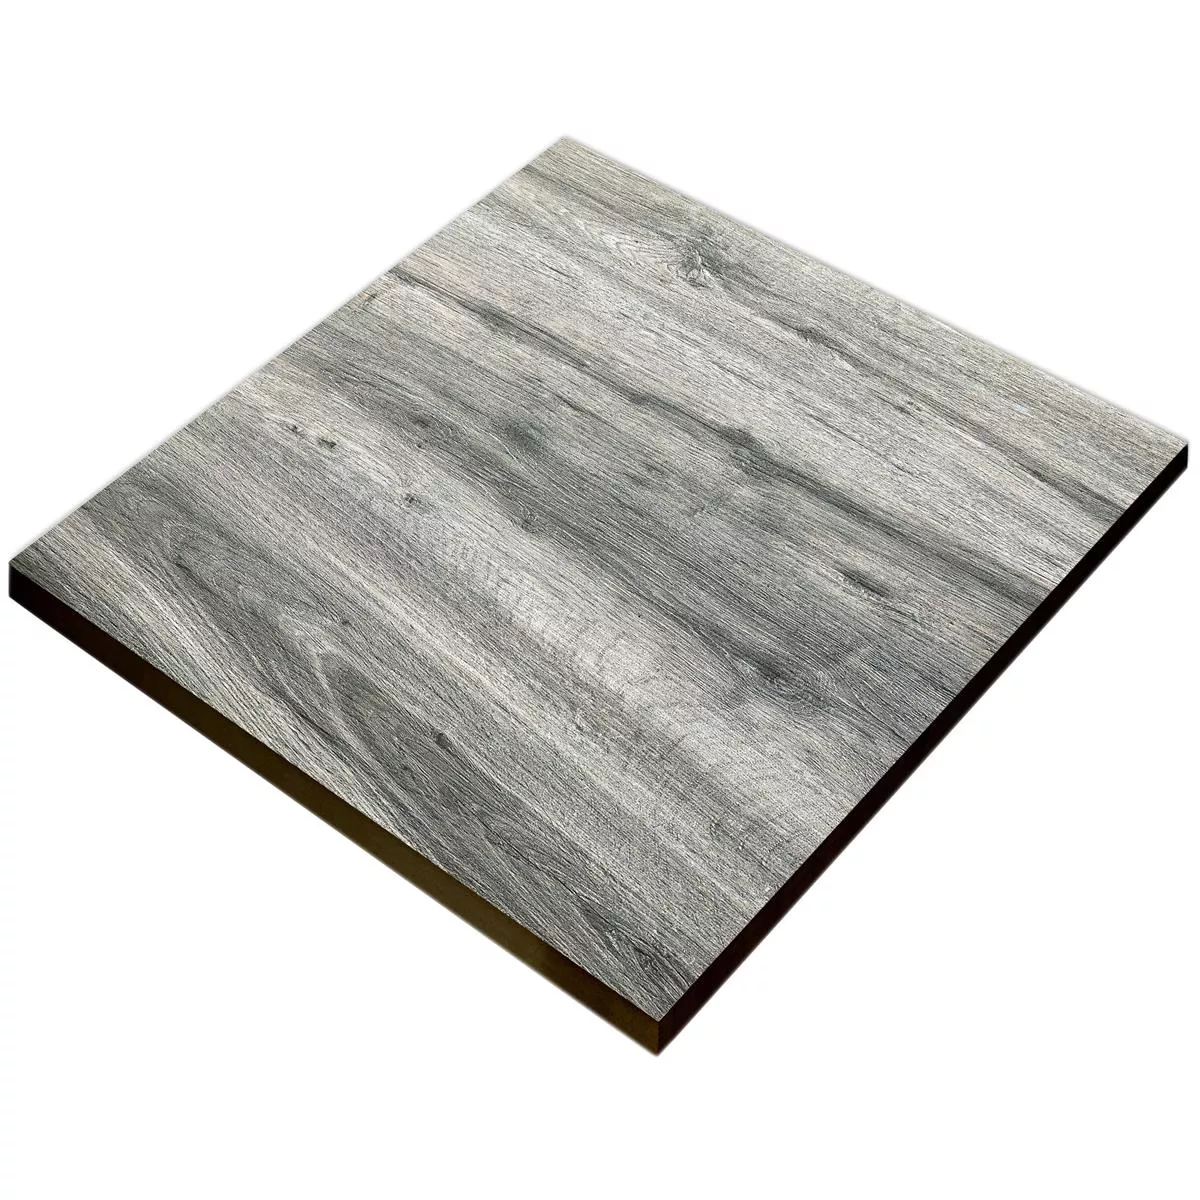 Próbka Taras Płyta Starwood Wygląd Drewna Grey 60x60cm